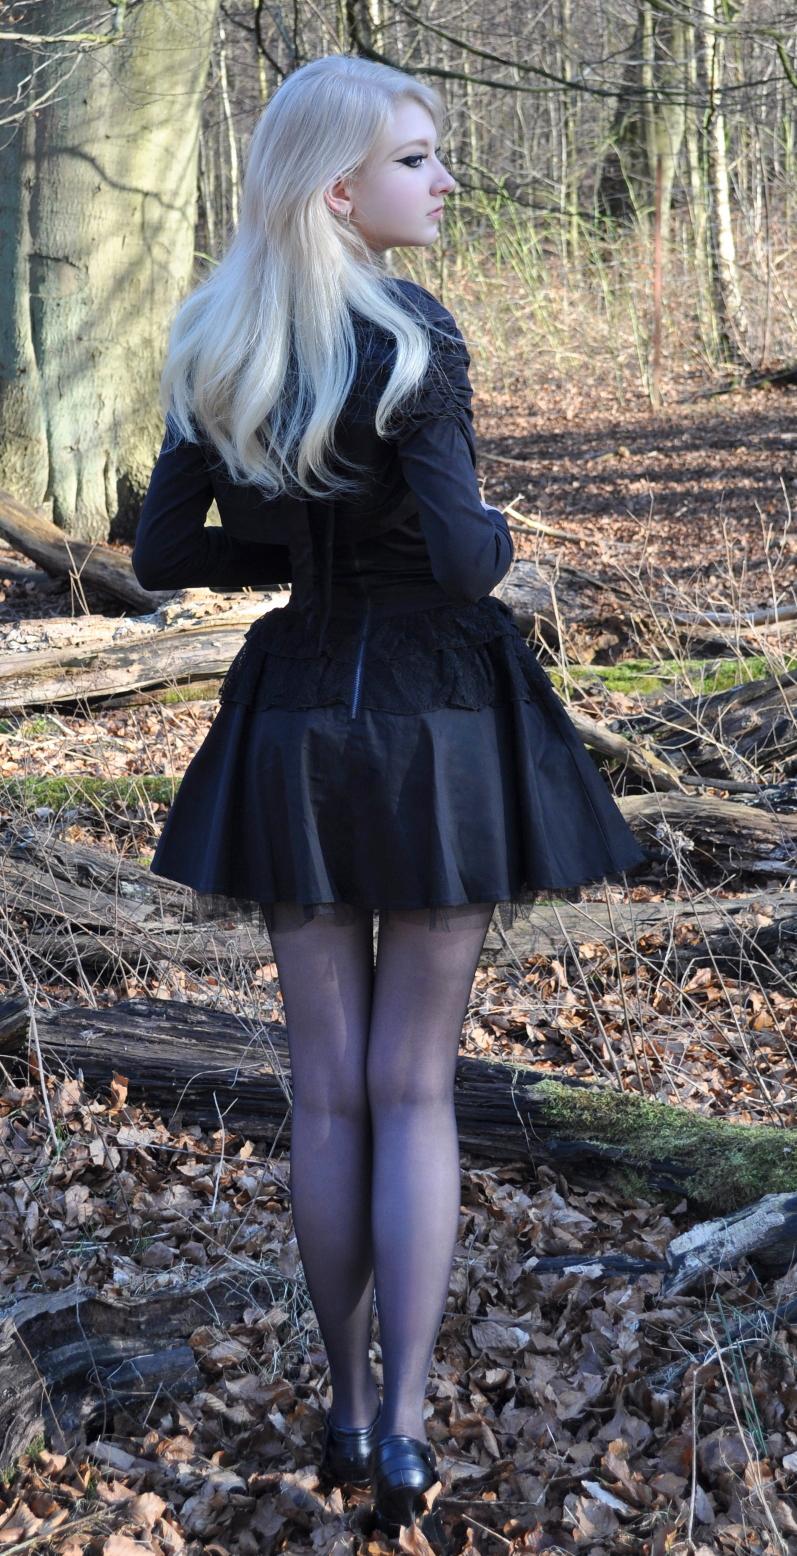 Blonde Gothic Girl wearing Black Sheer Pantyhose and Black Short Dress